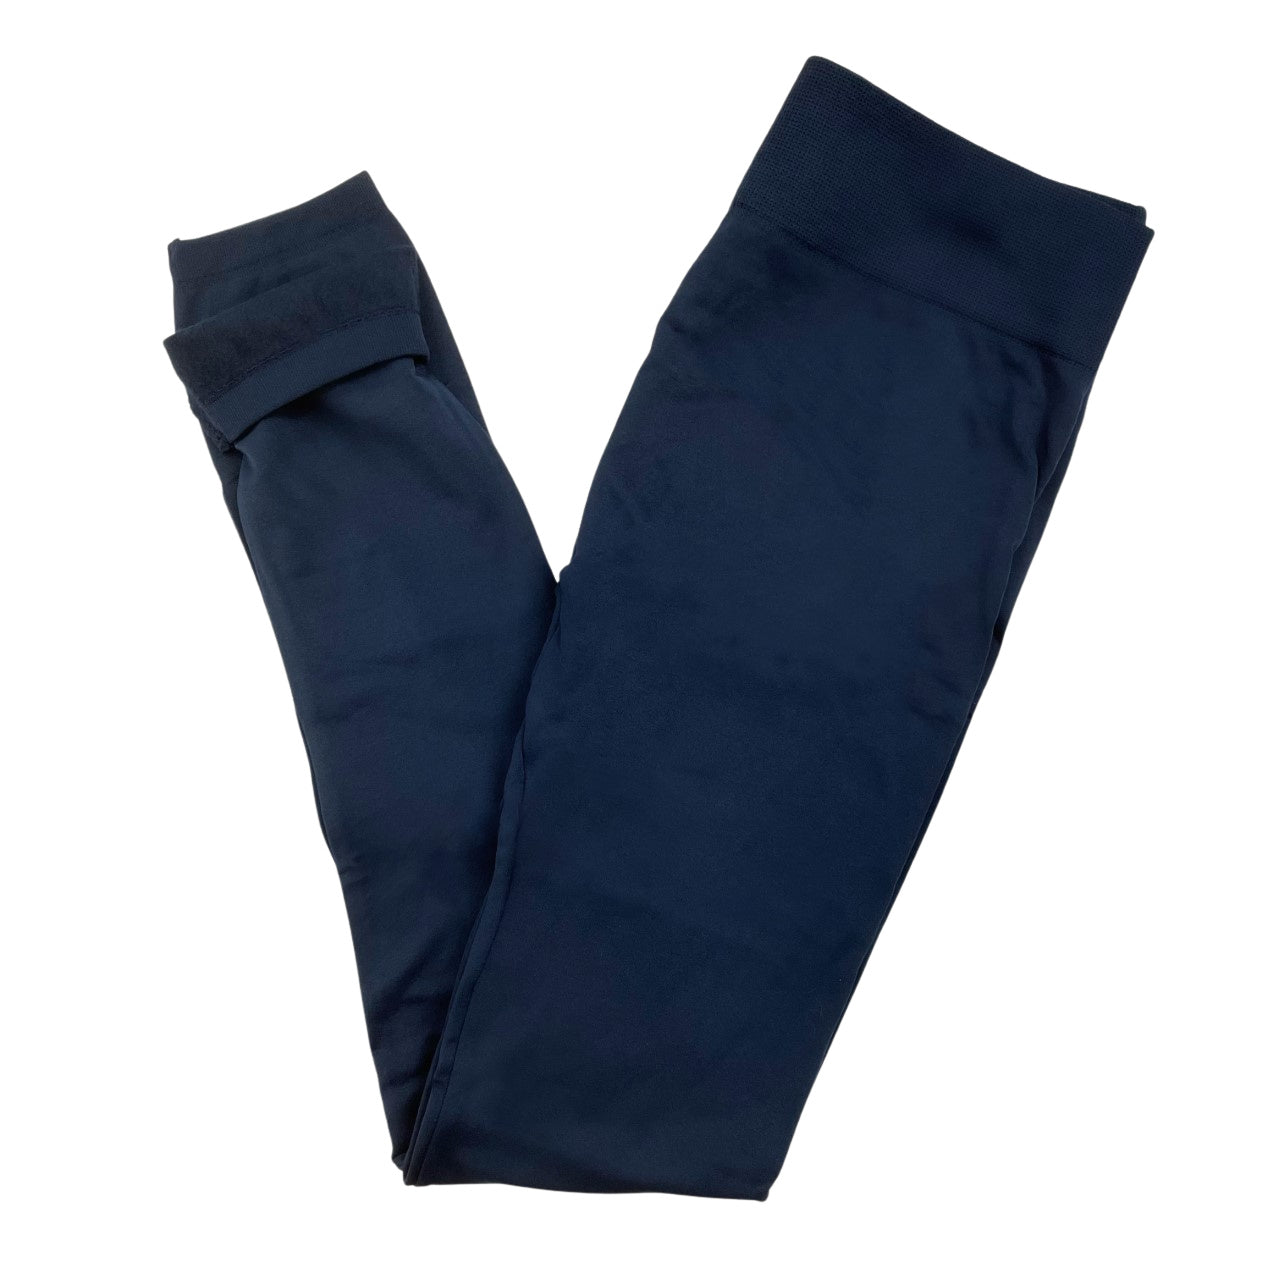 Plus Size Navy Blue Fleece Lined Leggings – Lani + Kei